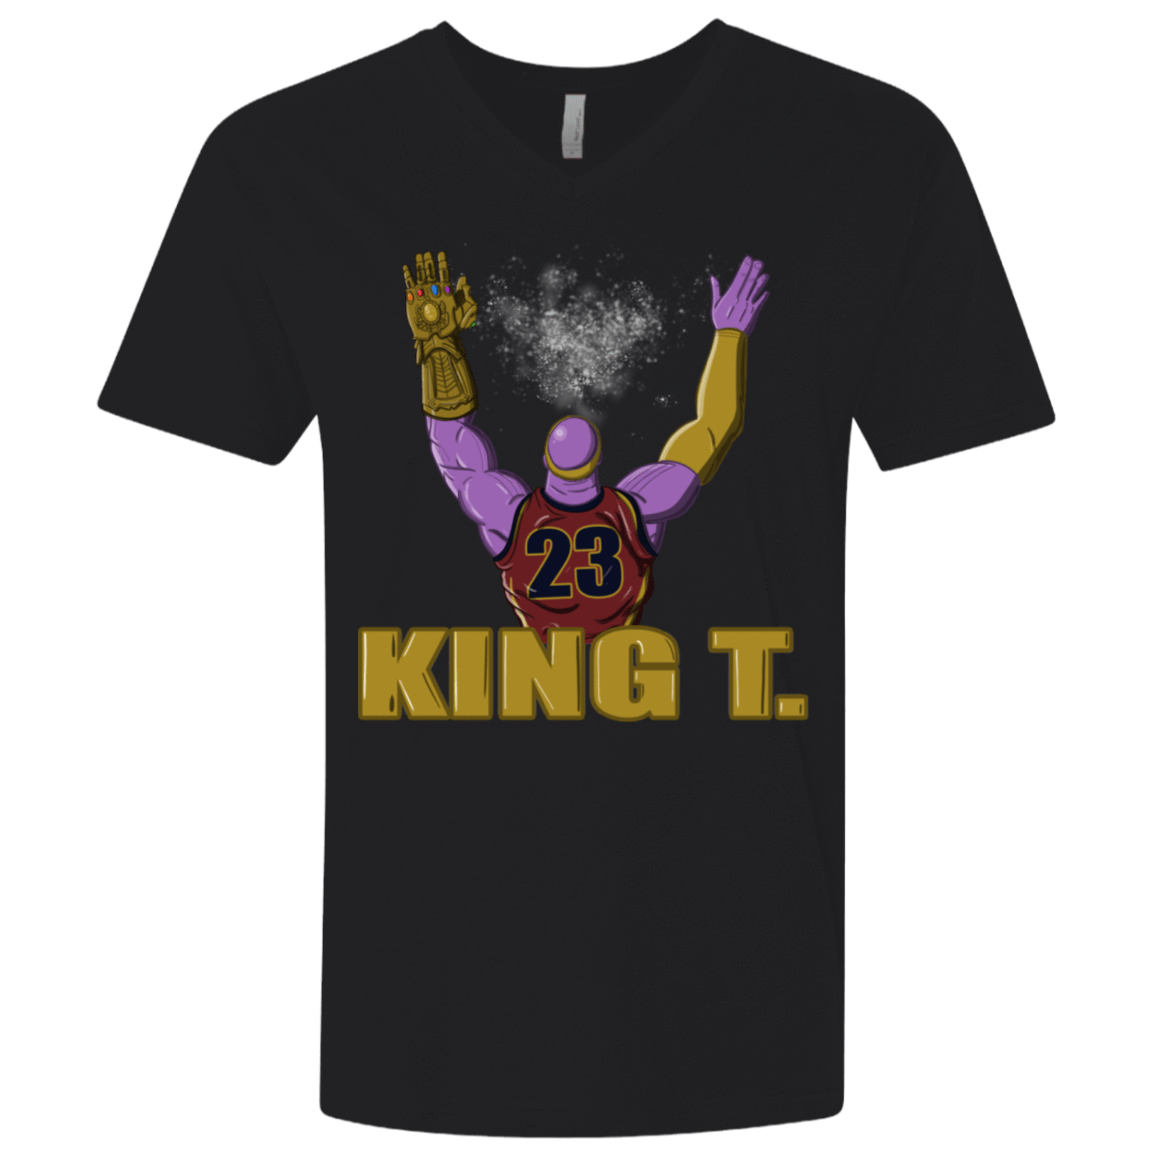 T-Shirts Black / X-Small King Thanos Men's Premium V-Neck